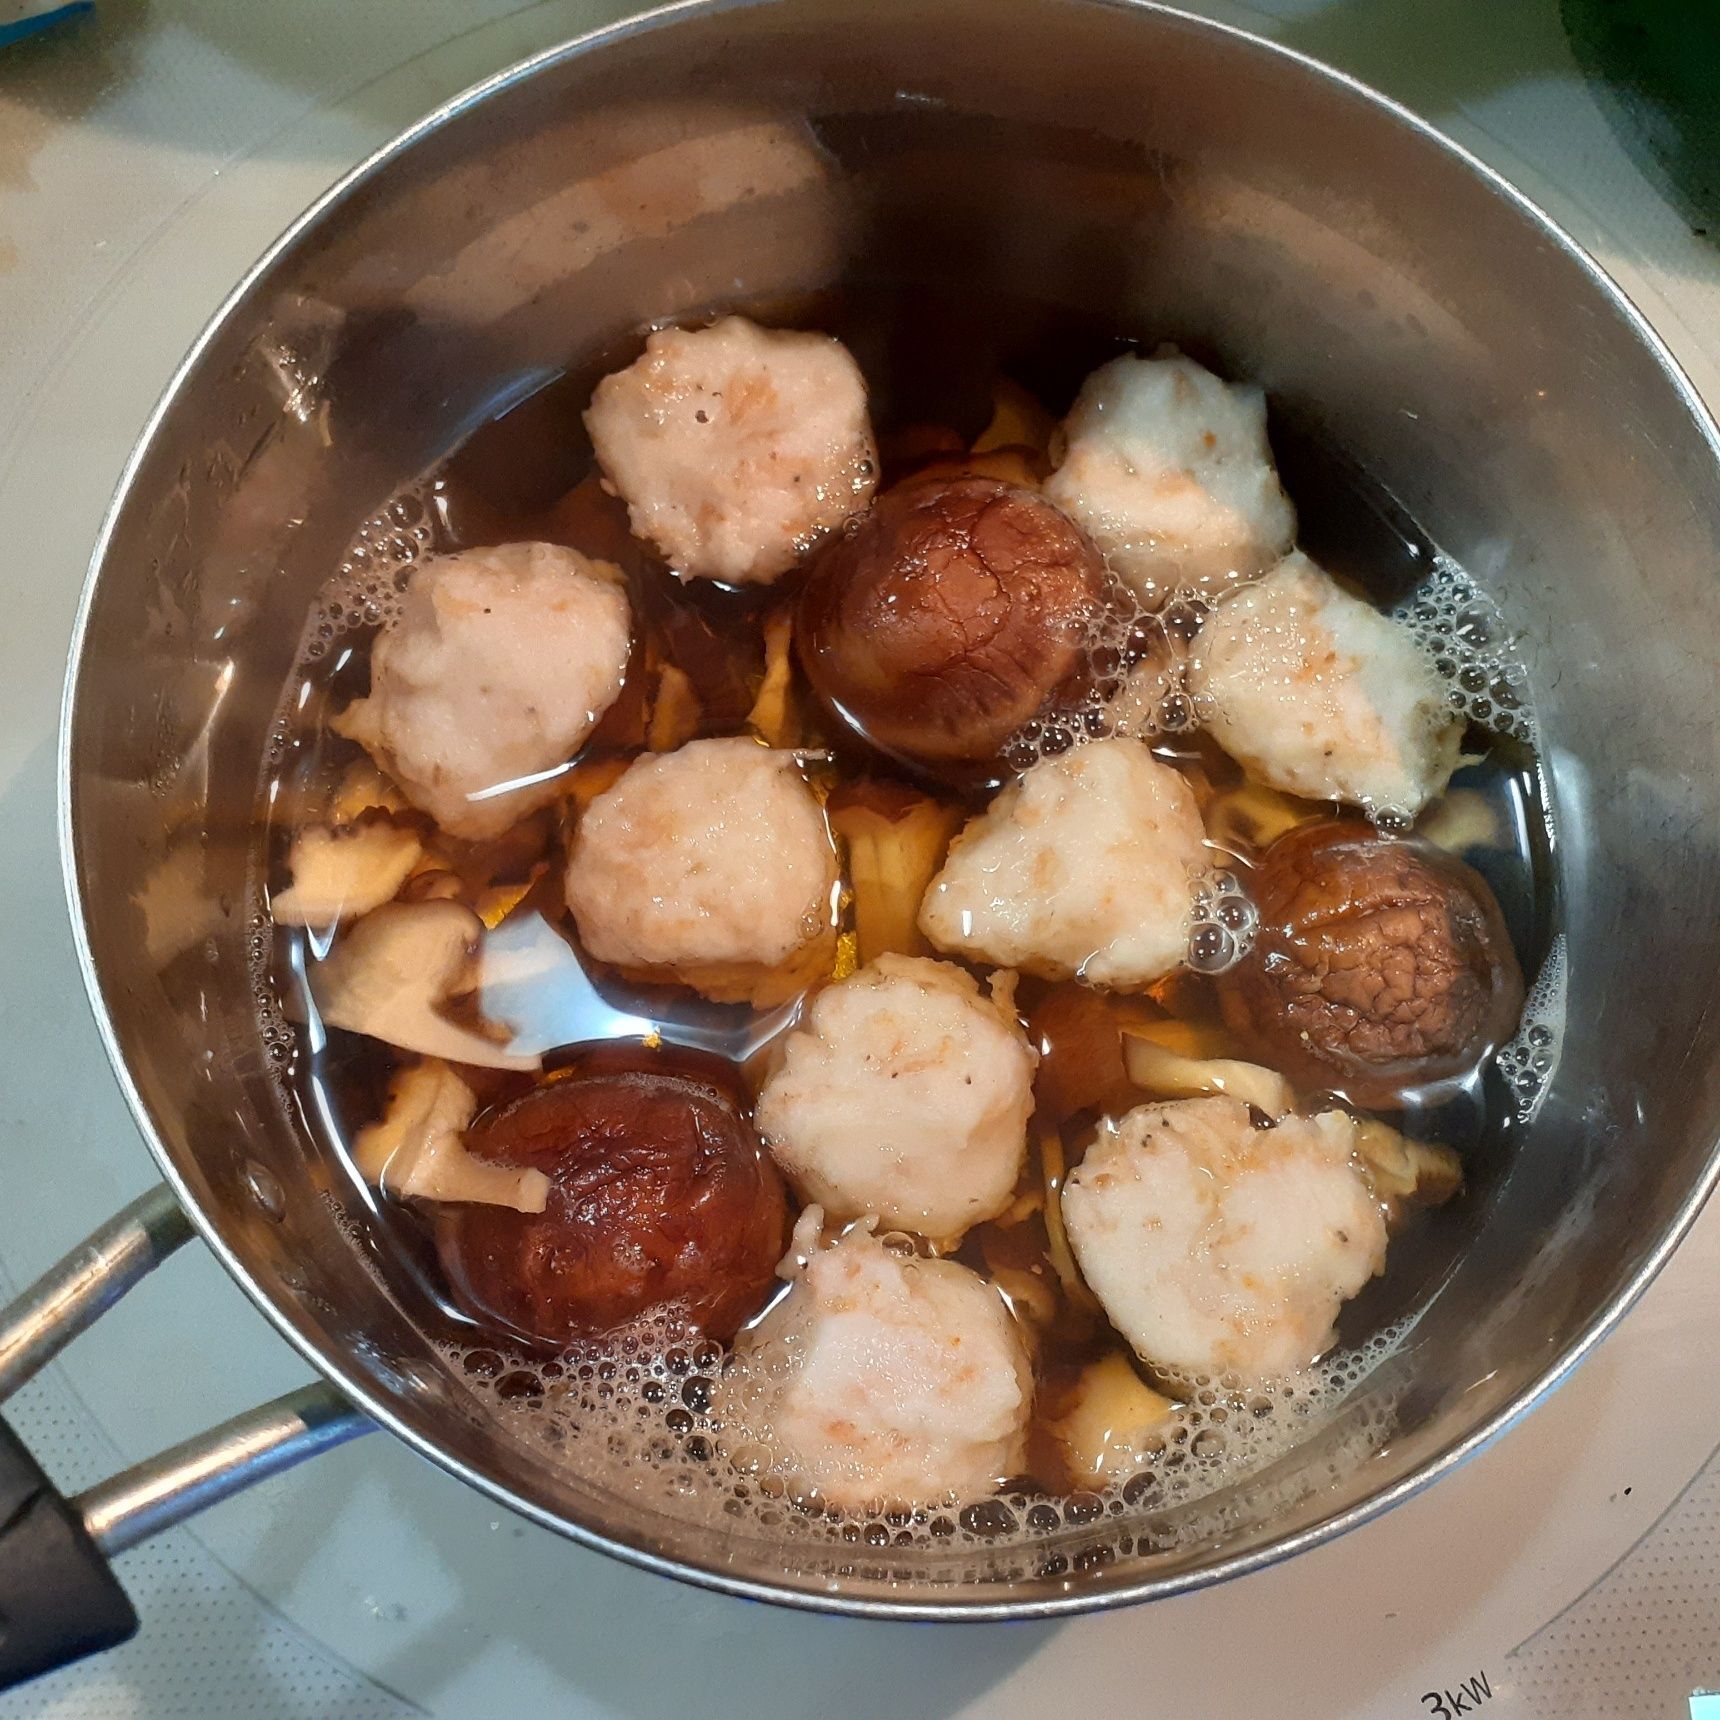 すり身と素干し海老を良く混ぜ合わせ、すり身団子を作り、椎茸出汁のお鍋に入れて煮る。